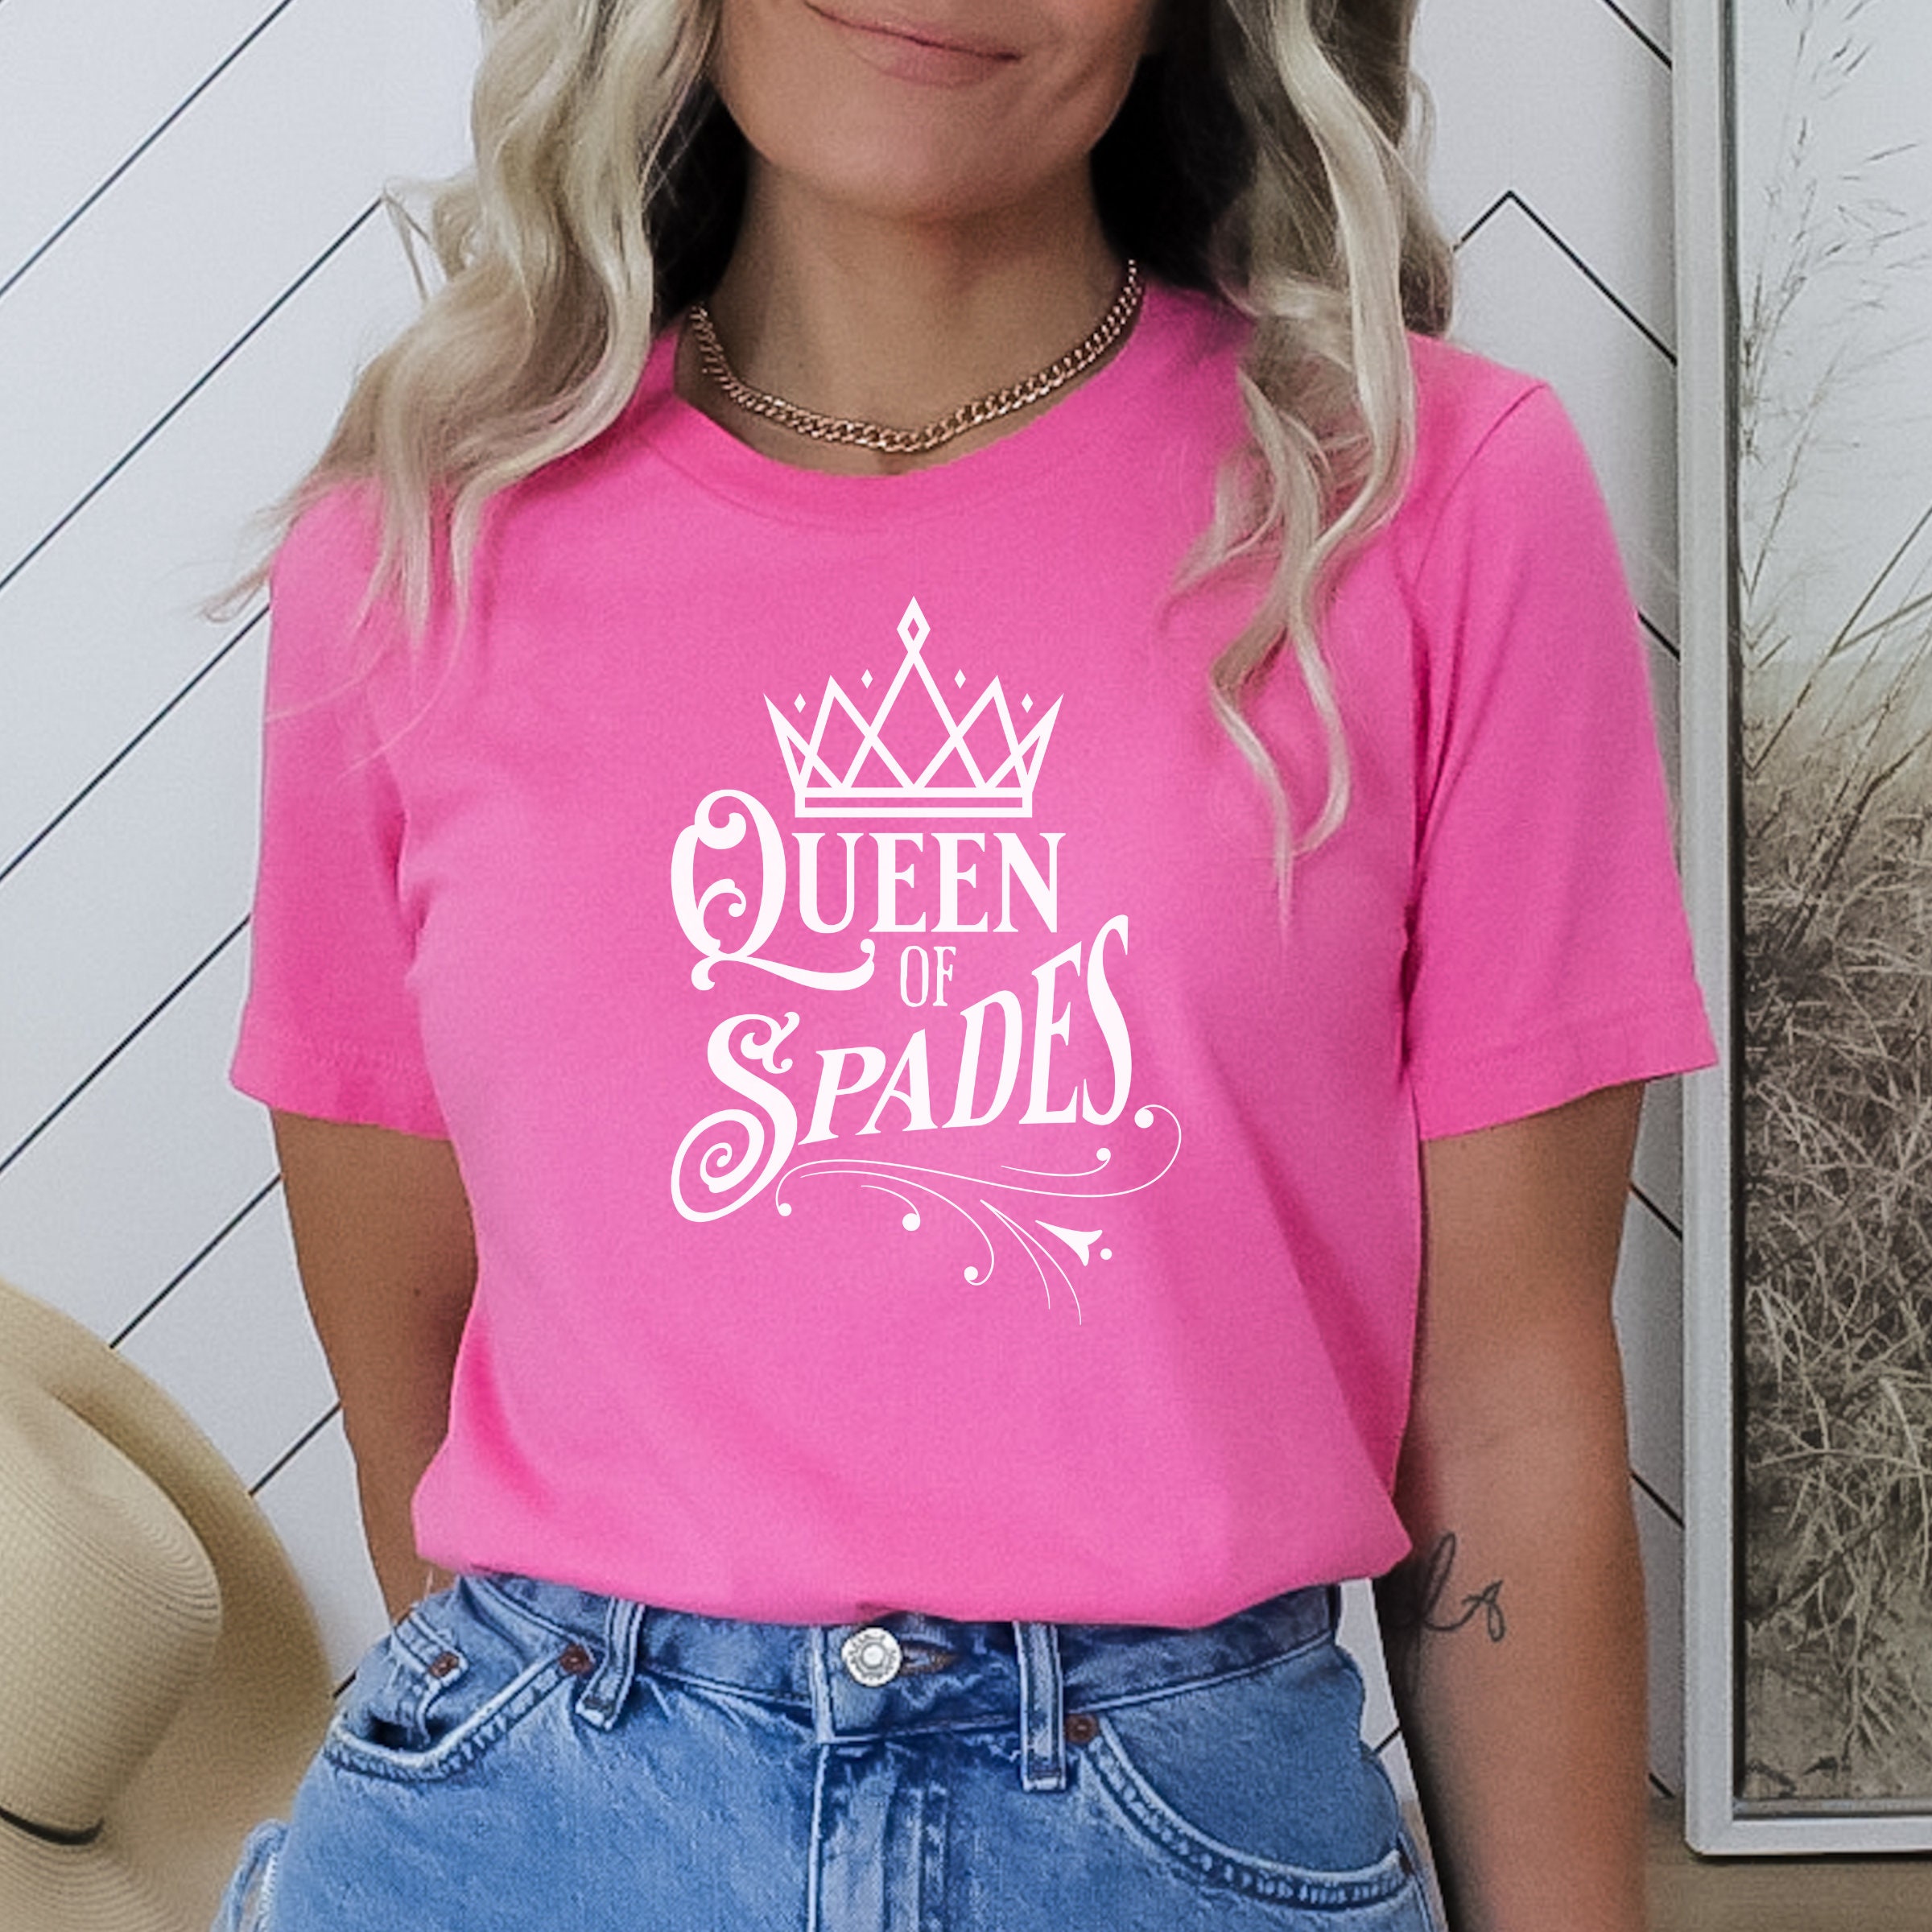 Queen of Spades Shirt Cuckold Lifestyle Shirt Shirt picture